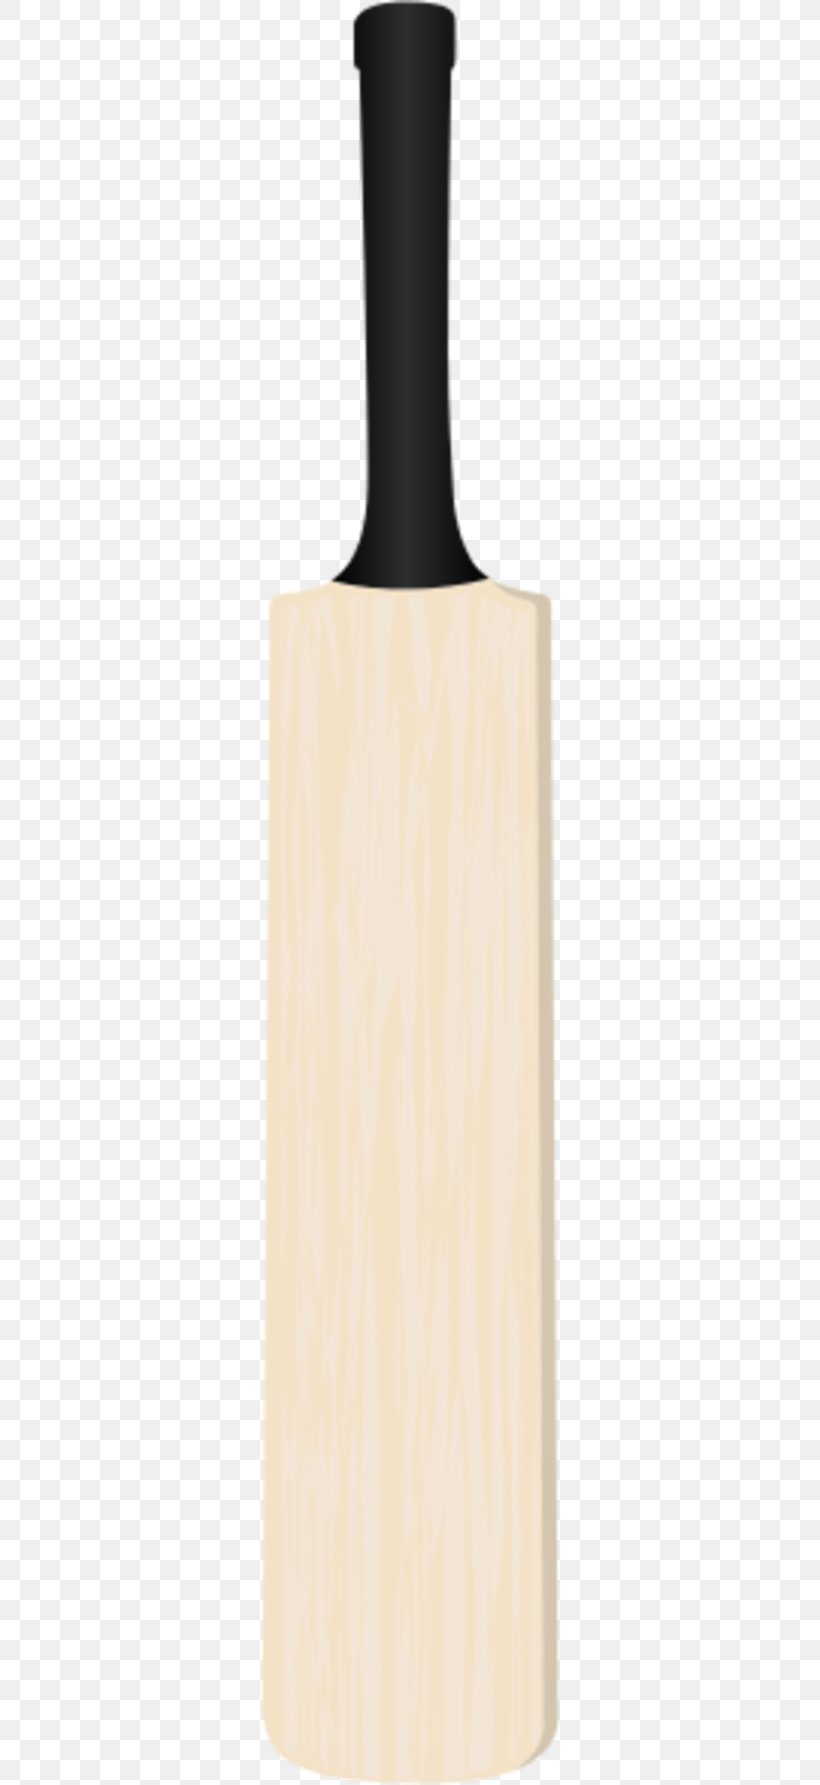 Cricket Bats Baseball Bats Clip Art, PNG, 300x1785px, Cricket Bats, Baseball, Baseball Bats, Batting, Cricket Download Free